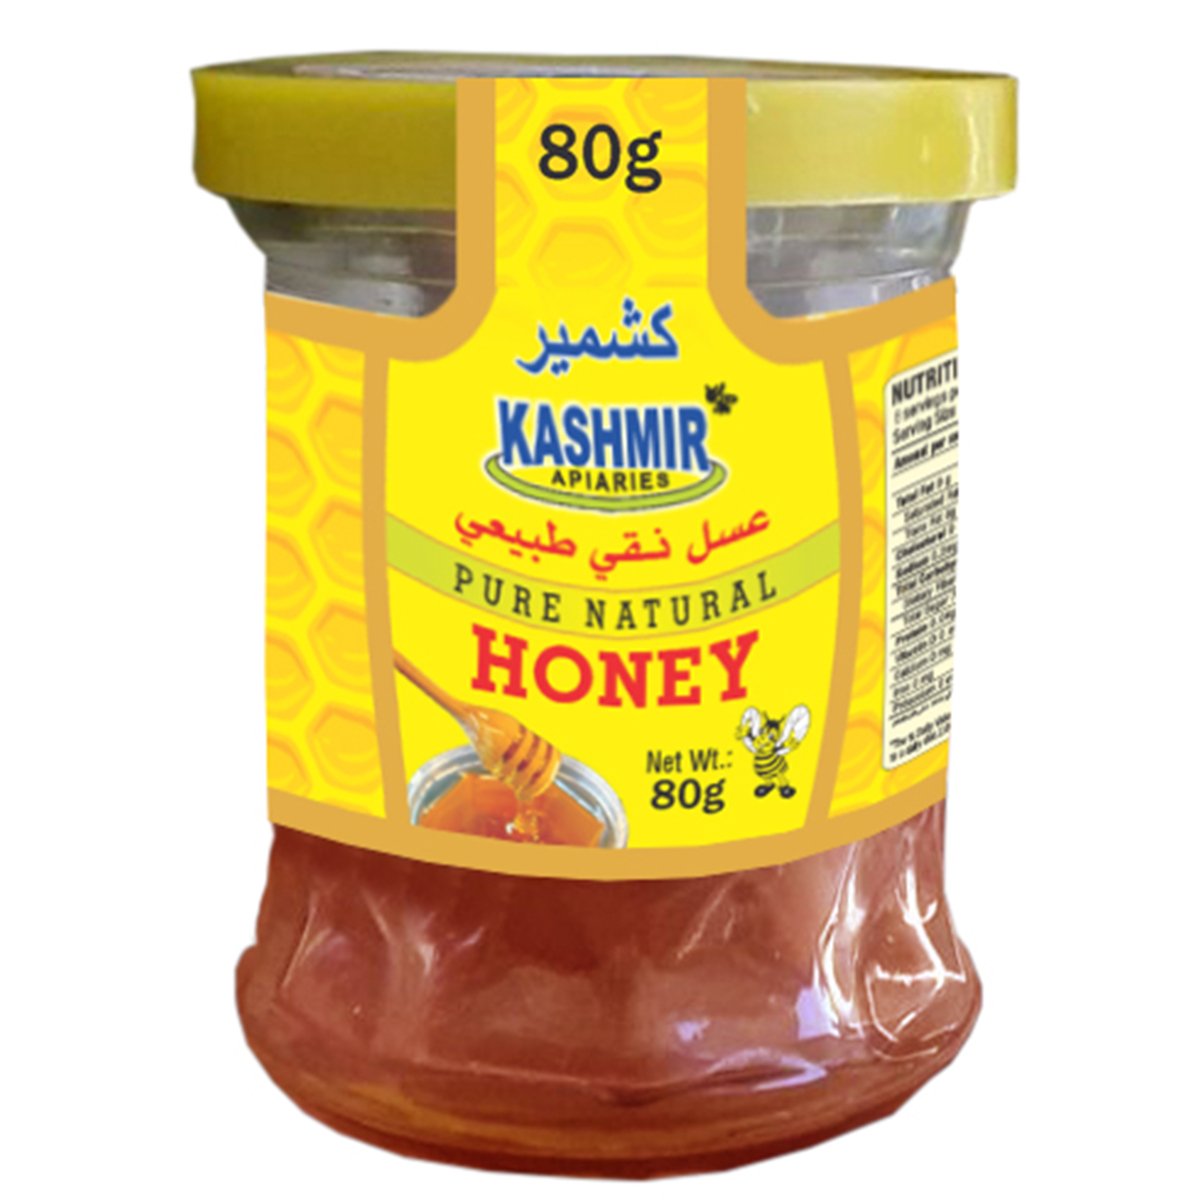 Kashmir Pure Natural Honey 80g